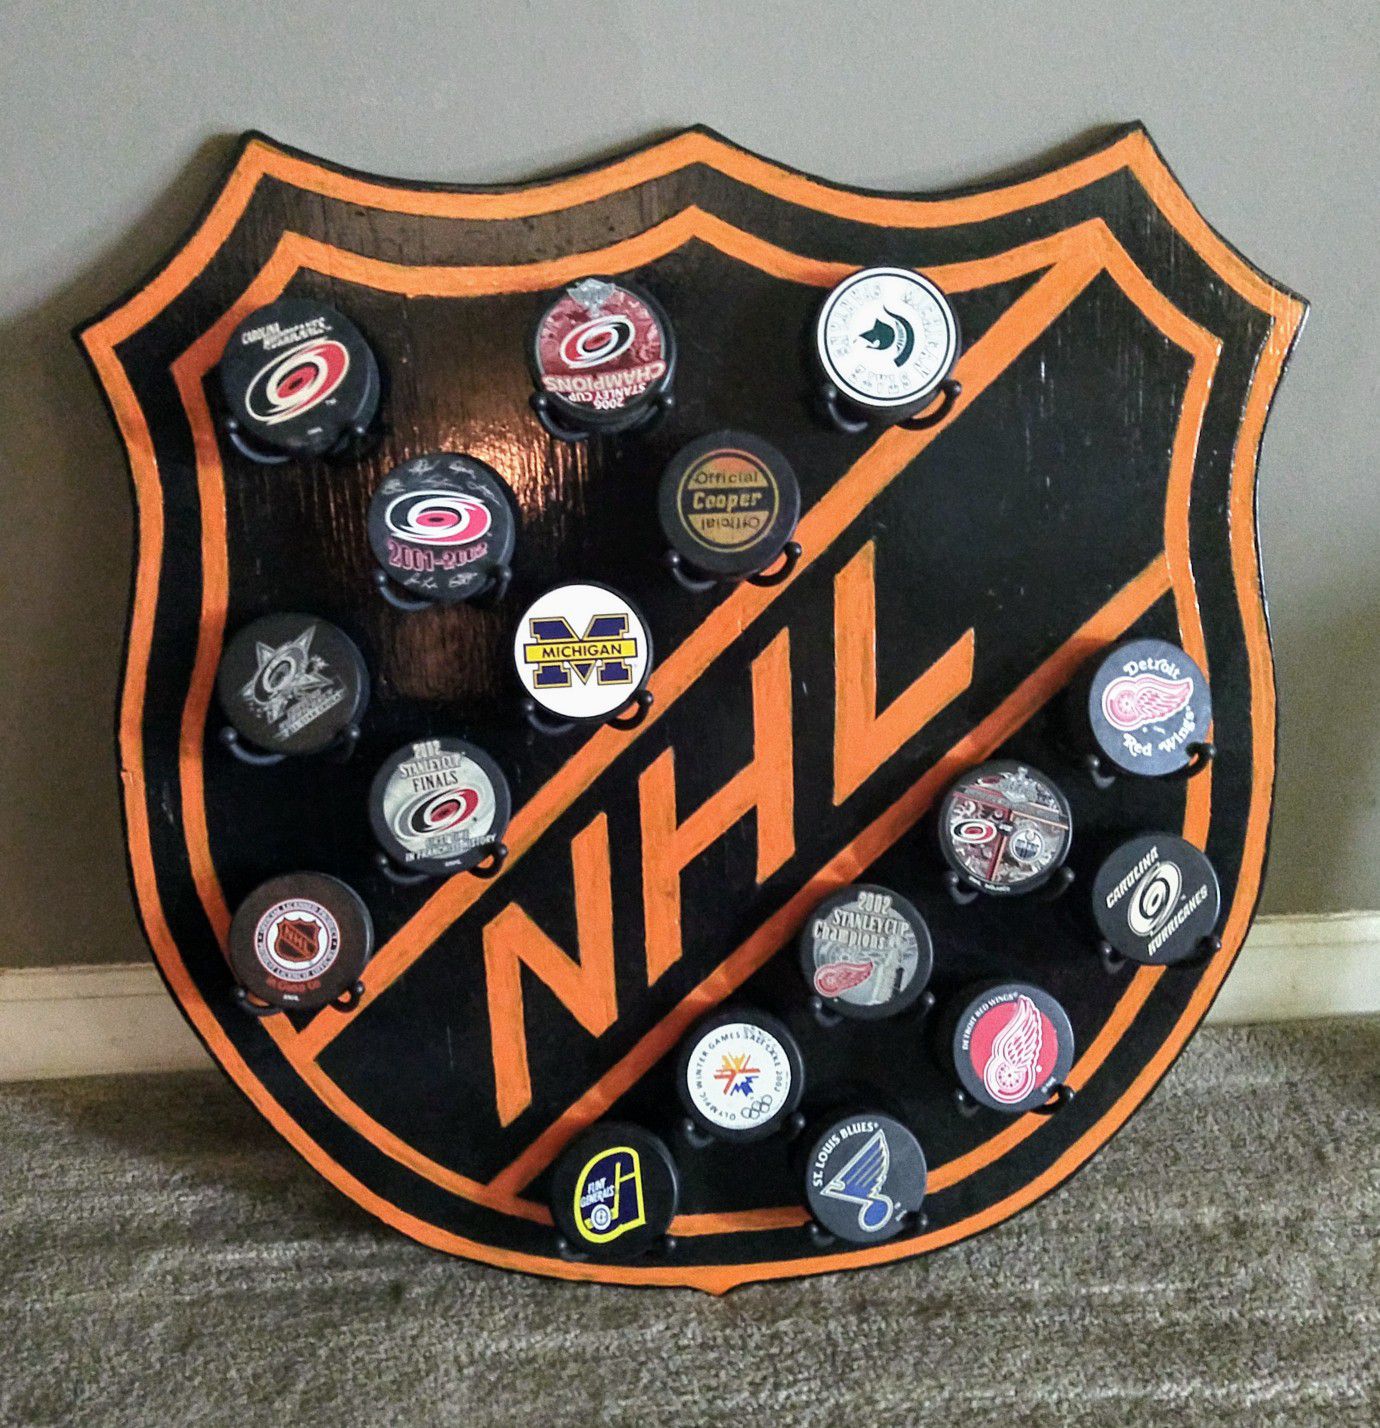 NHL Puck Display